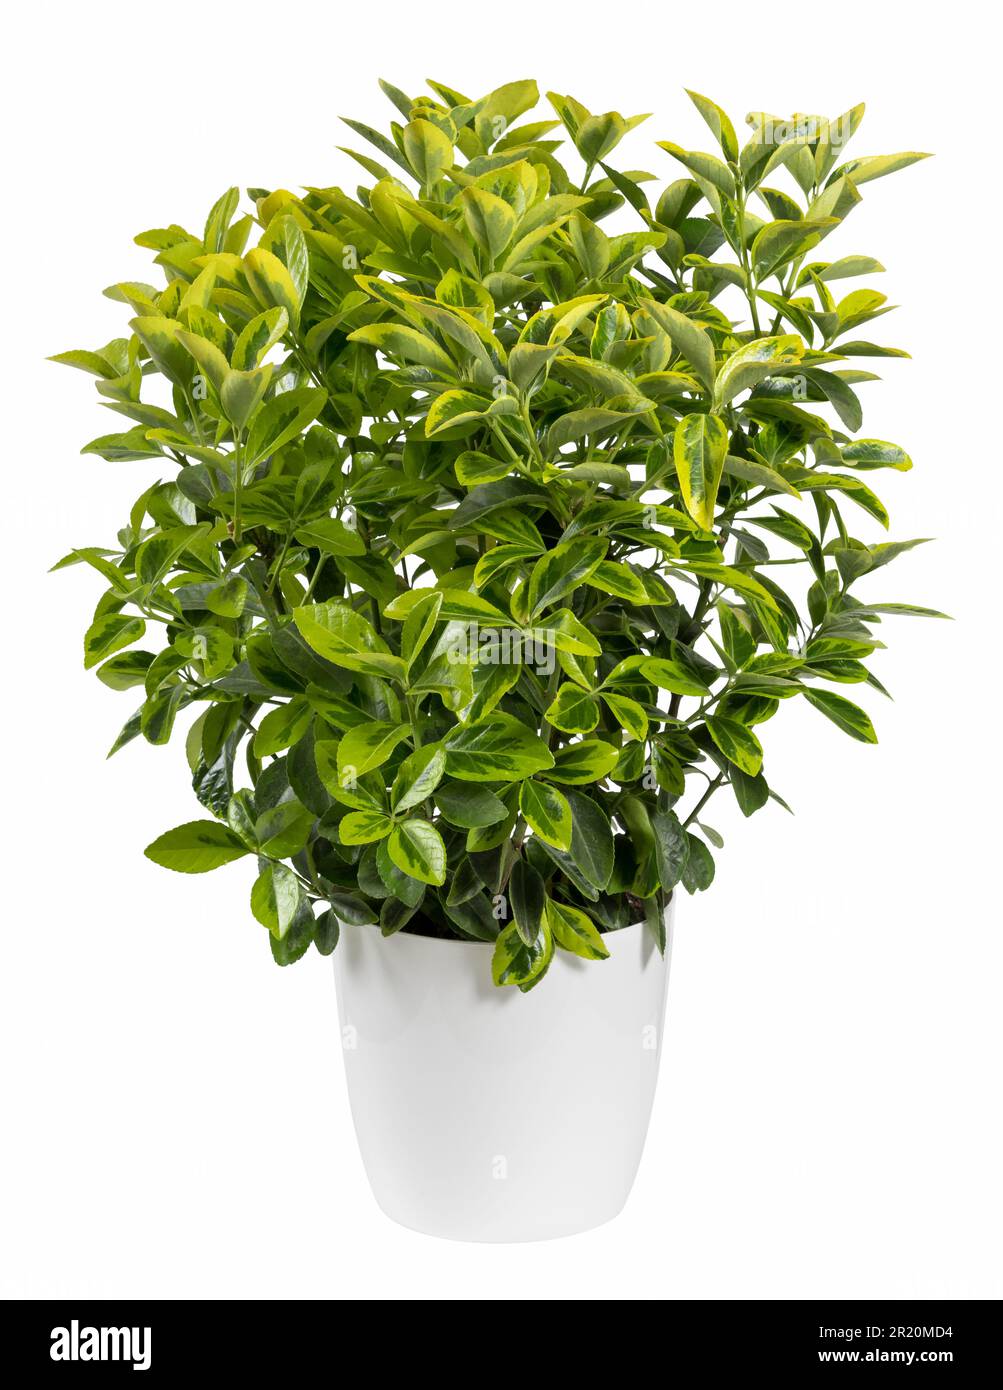 Isolierte, üppige Euonymus-Pflanze mit frischen grünen Blättern, die im Studio auf weißem Hintergrund vegetiert werden Stockfoto